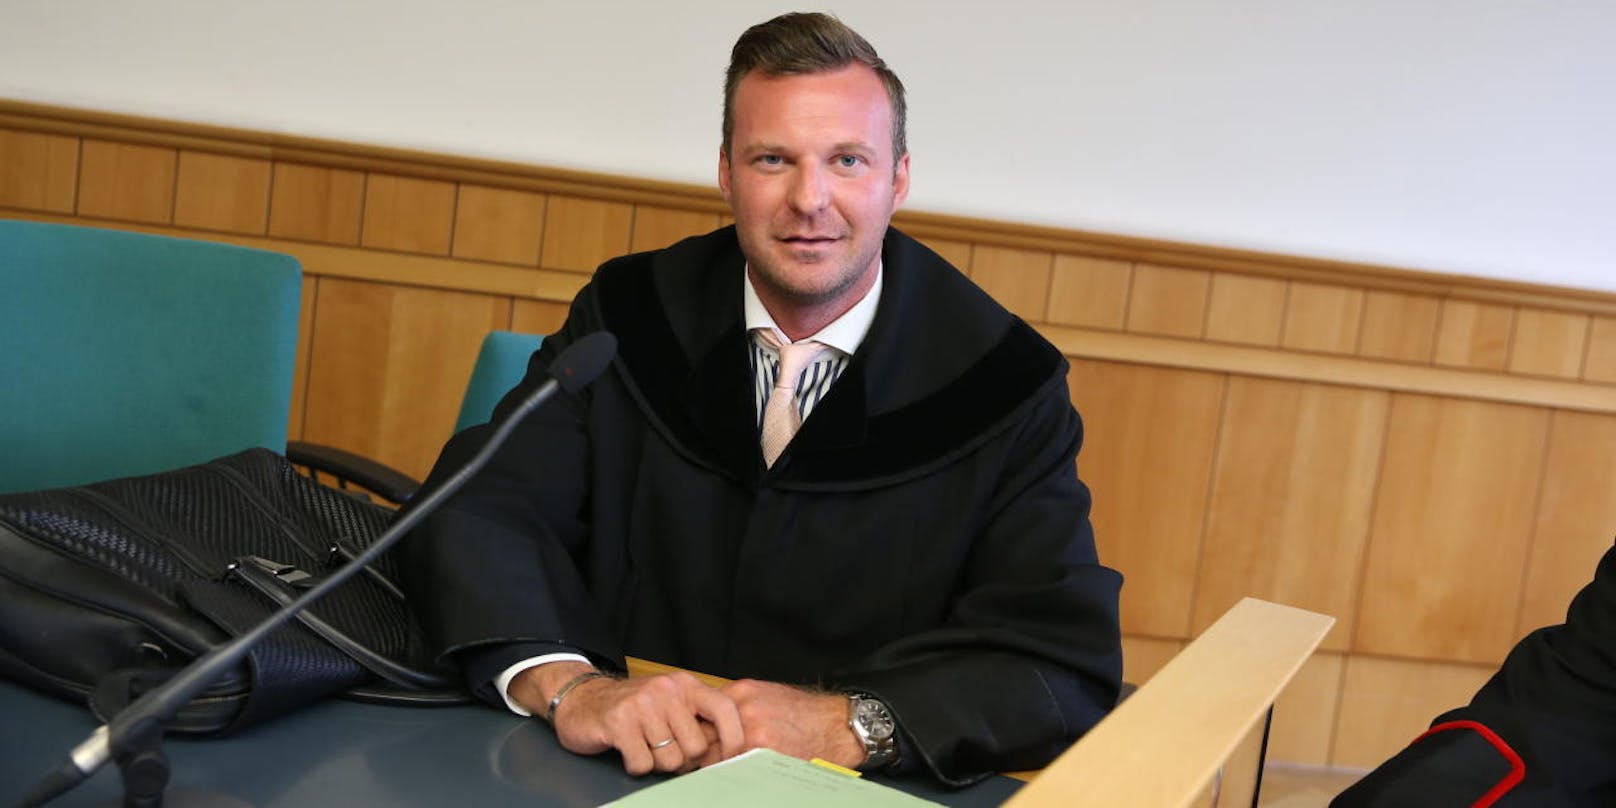 Anwalt Philipp Wolm verteidigte.